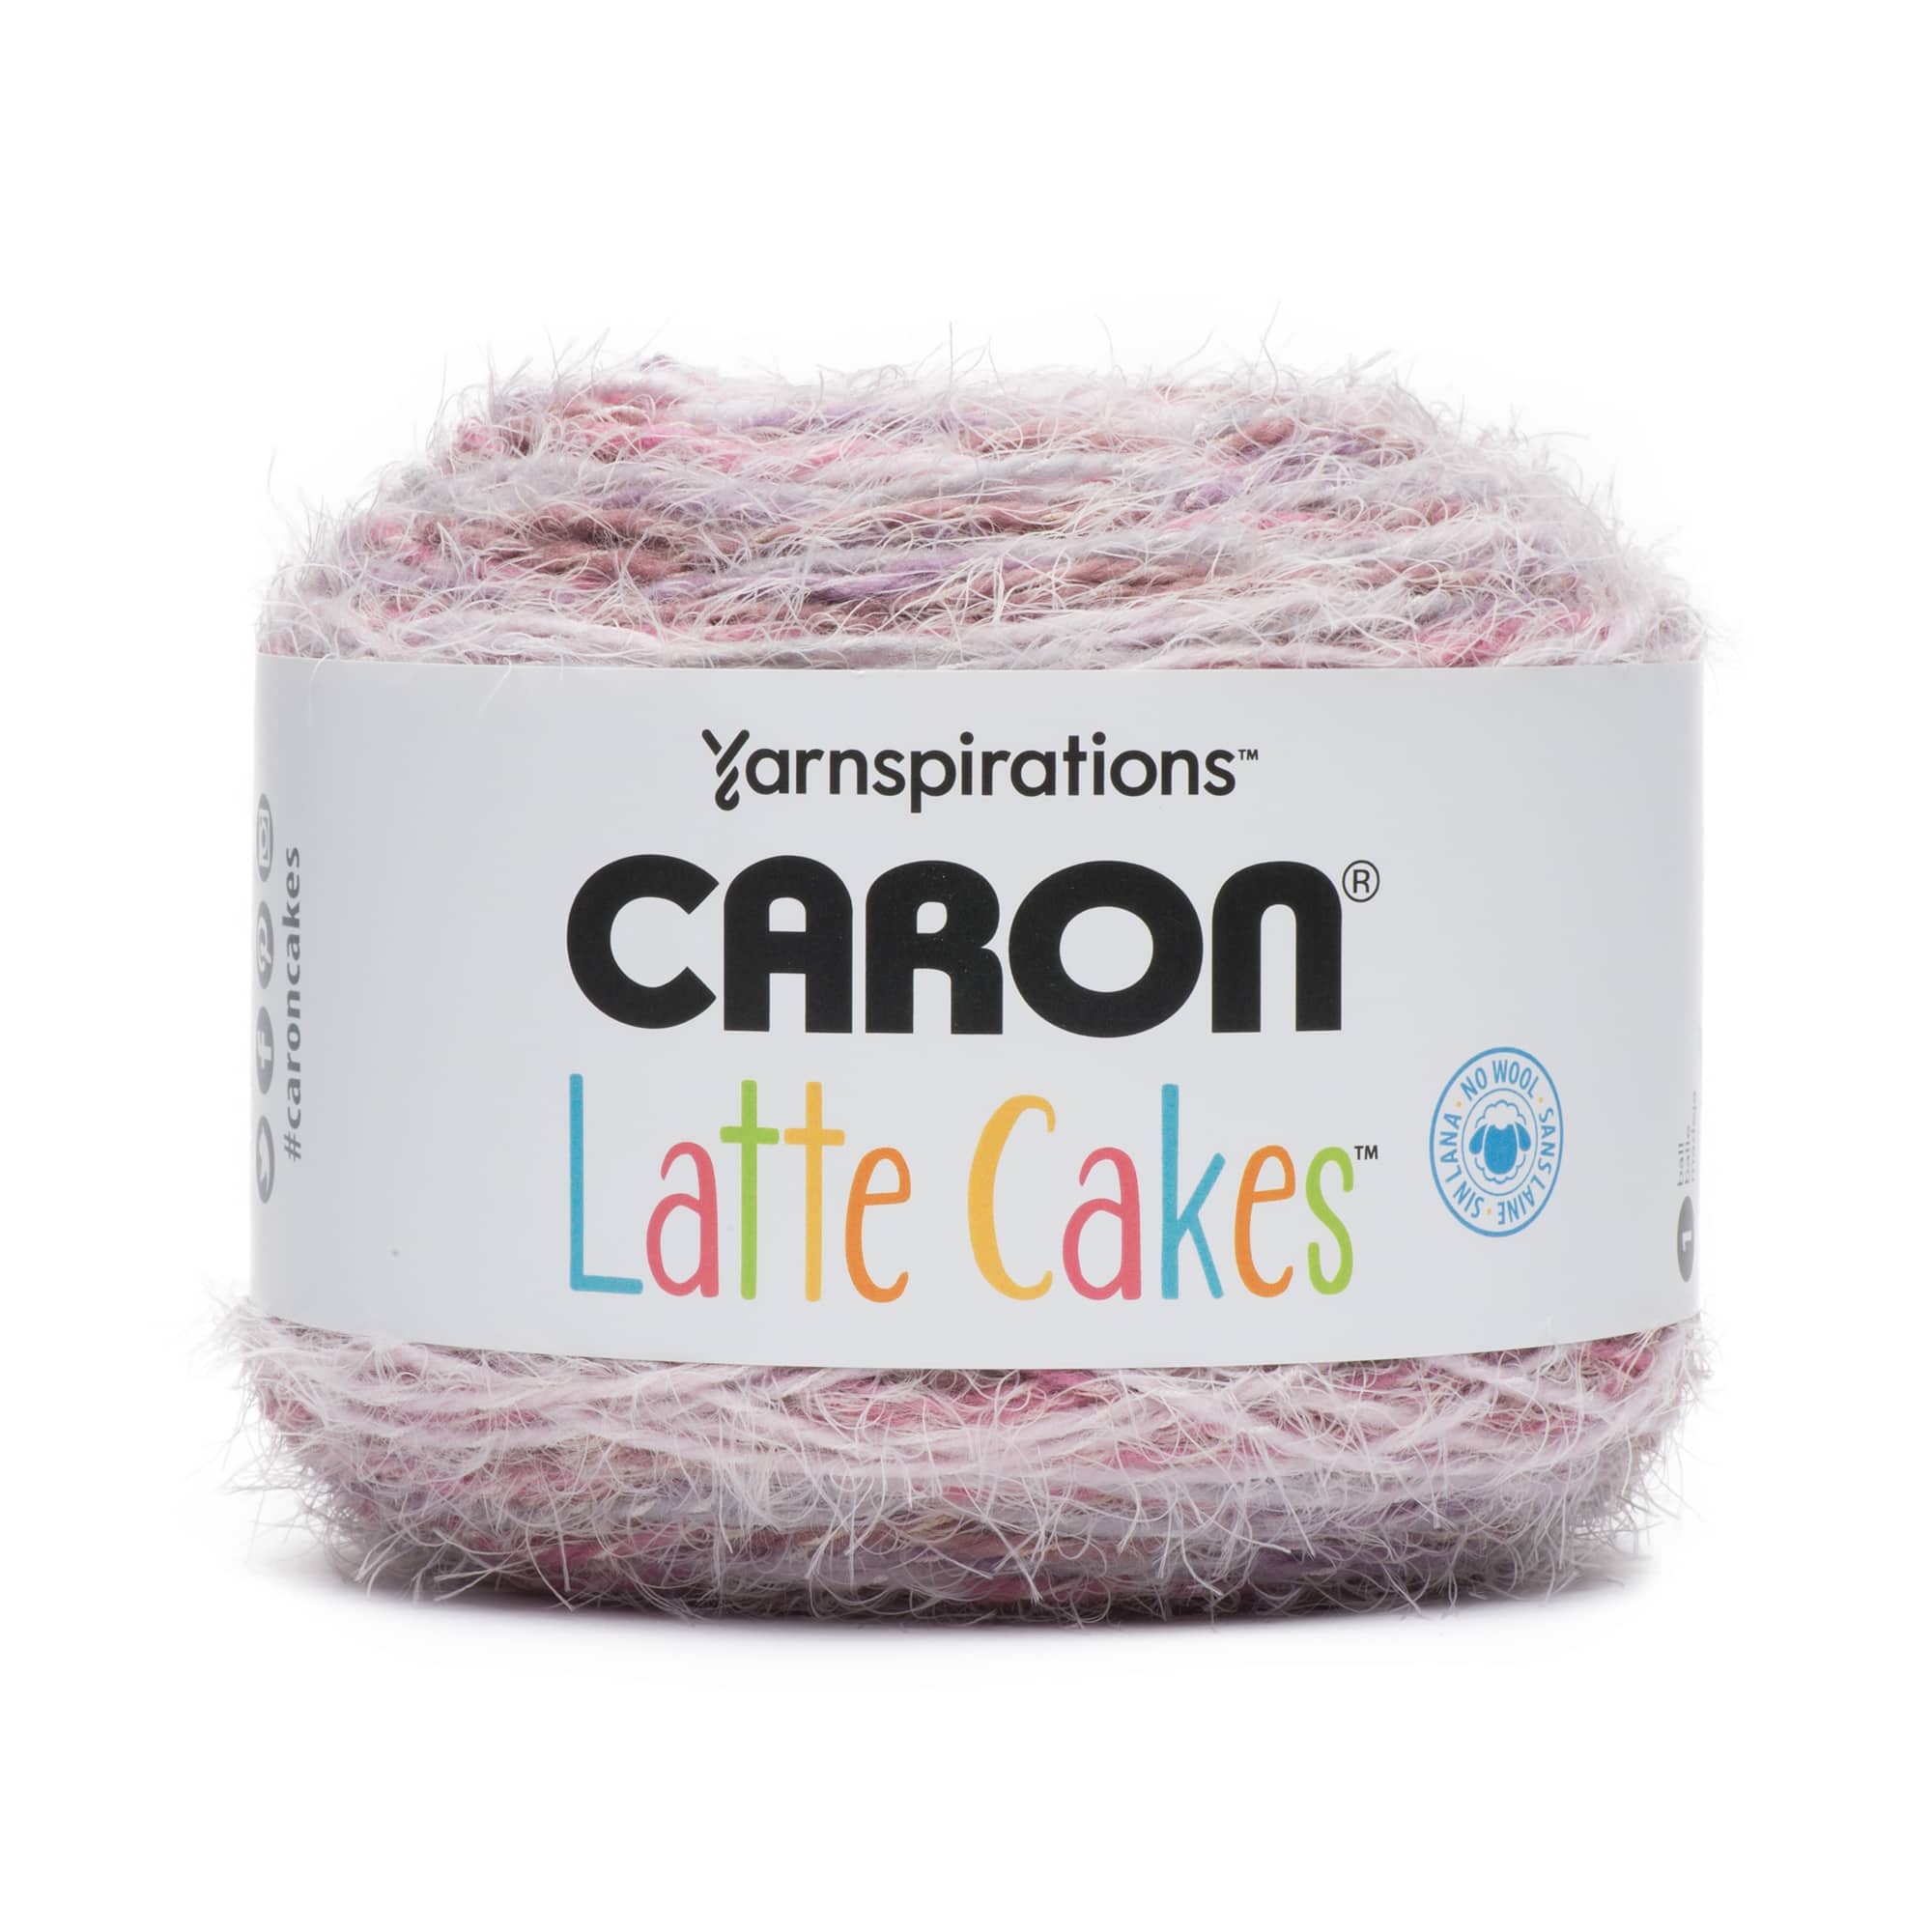  Caron Chunky Cakes Self Striping Yarn (Galaxy Macarons)